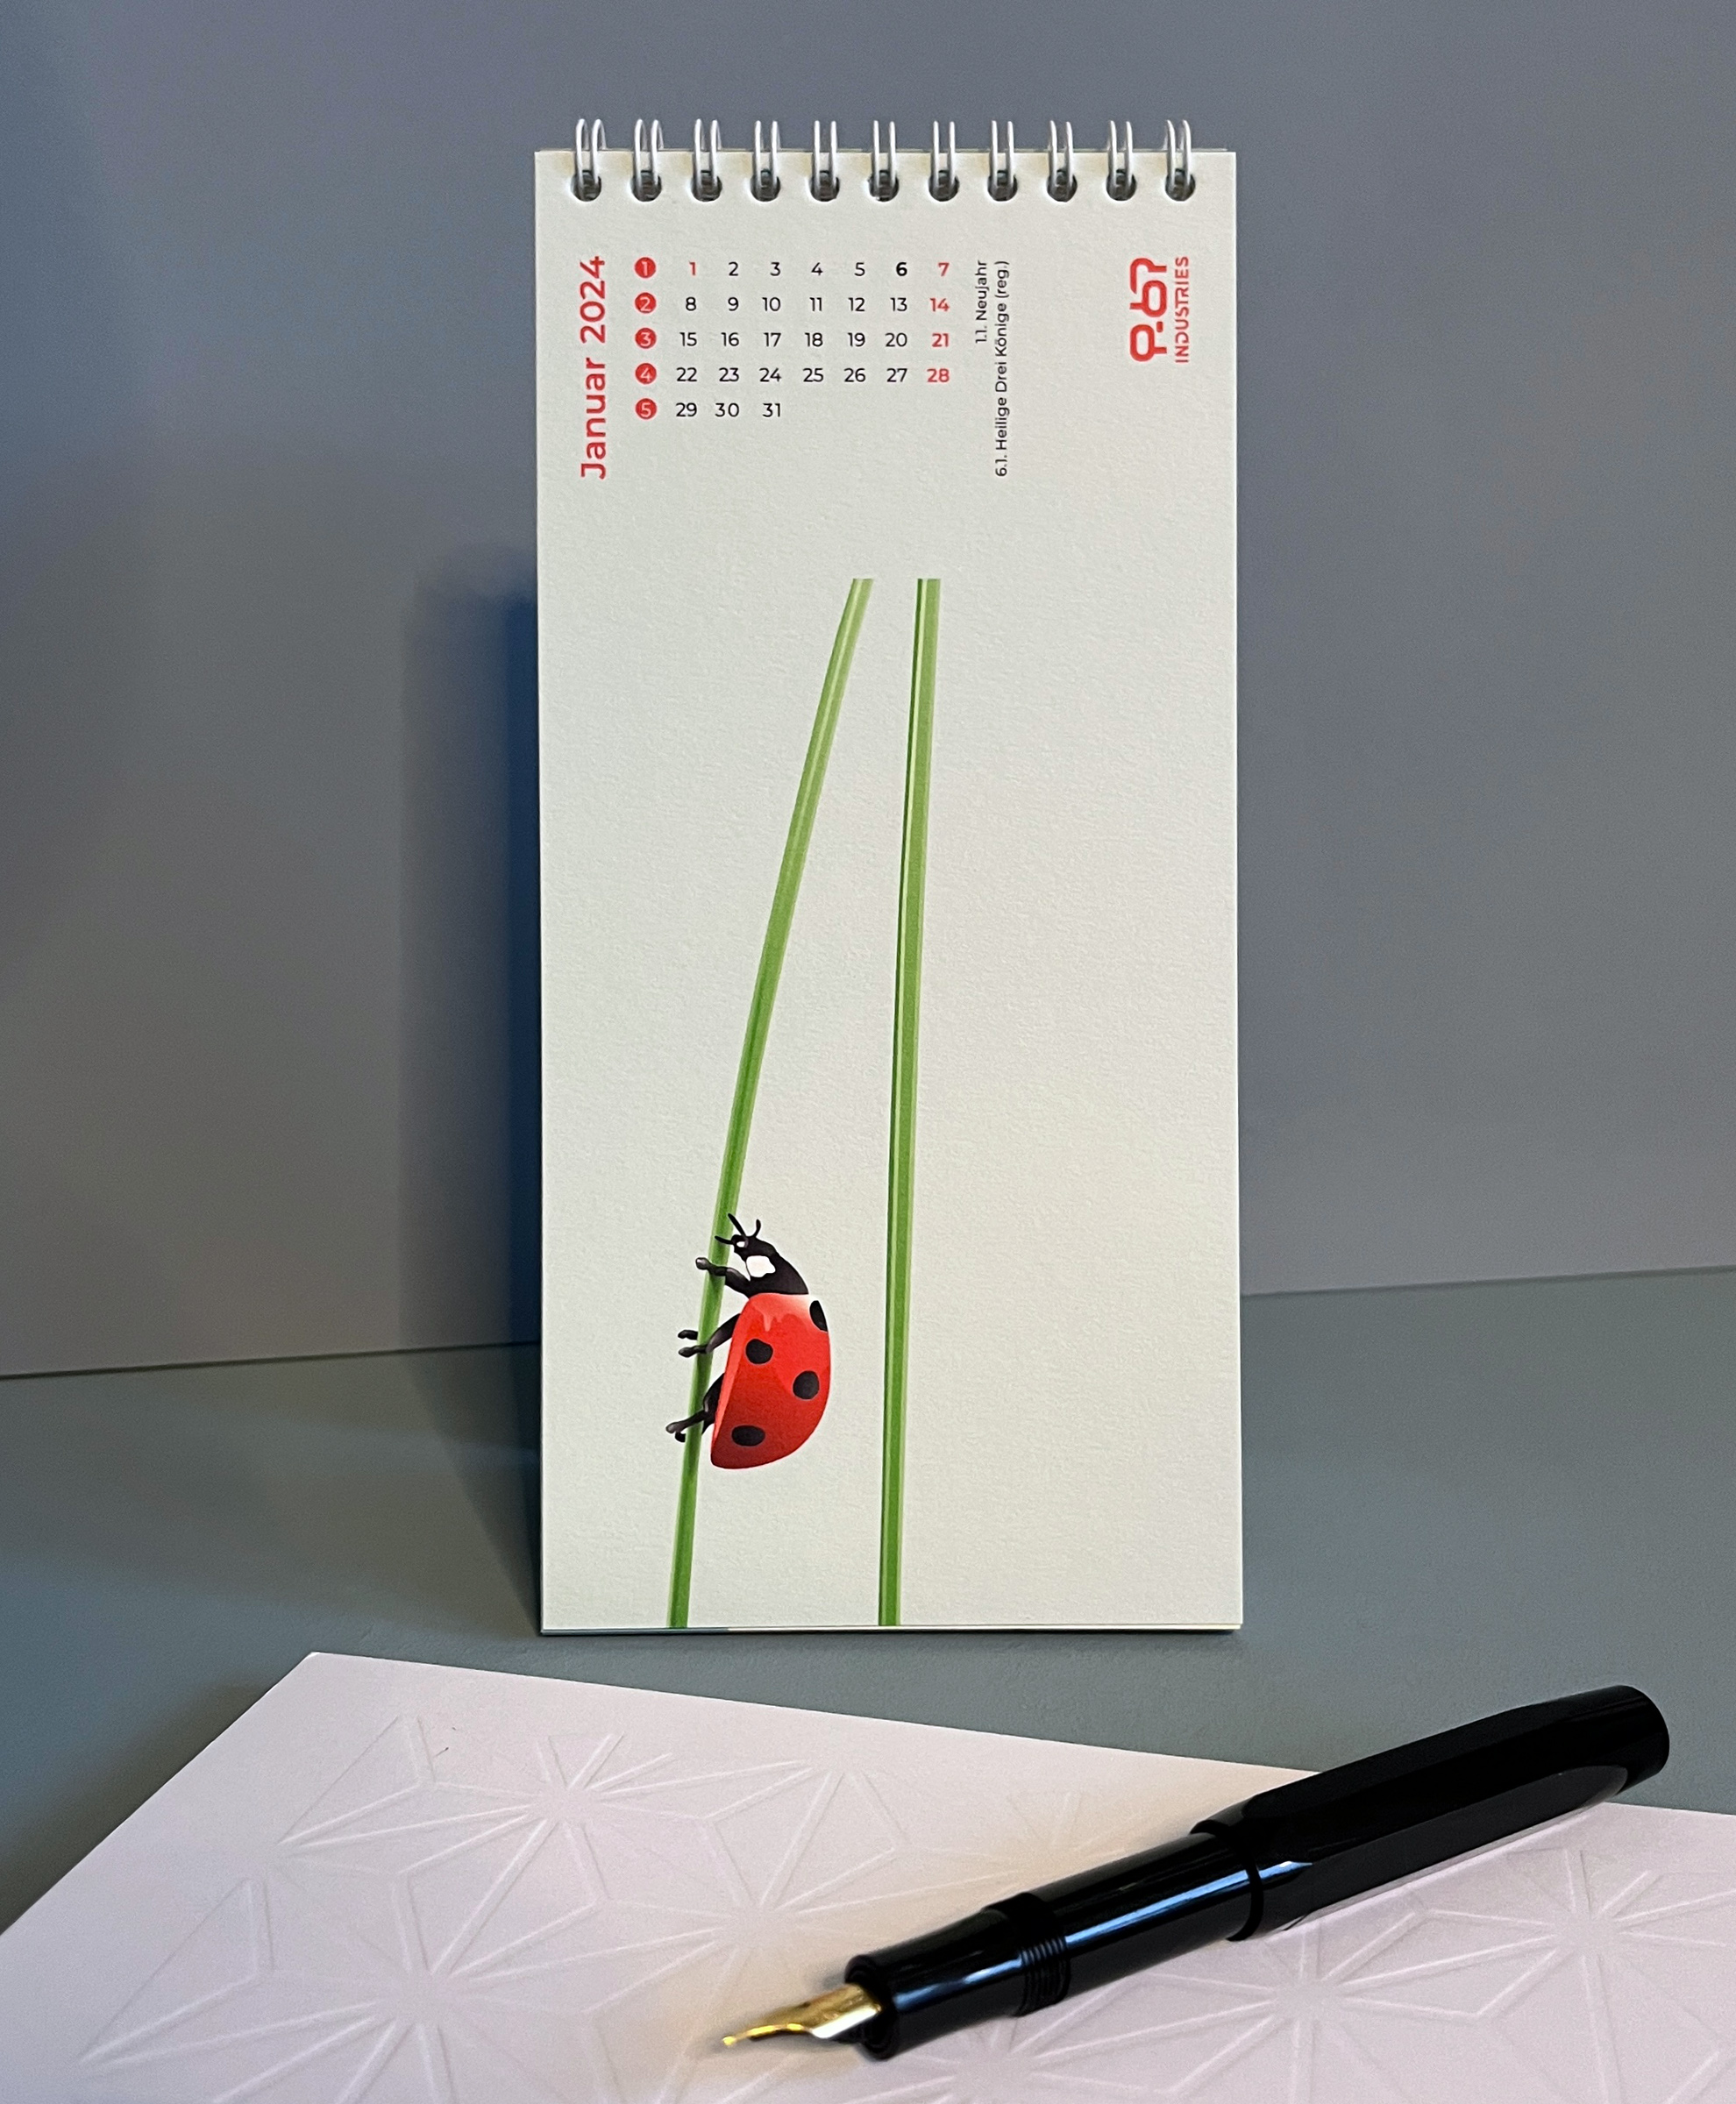 Ein Marienkäfer krabbelt einen Grashalm hinauf - Illustration von Steffi Meyer, P-67 Industries